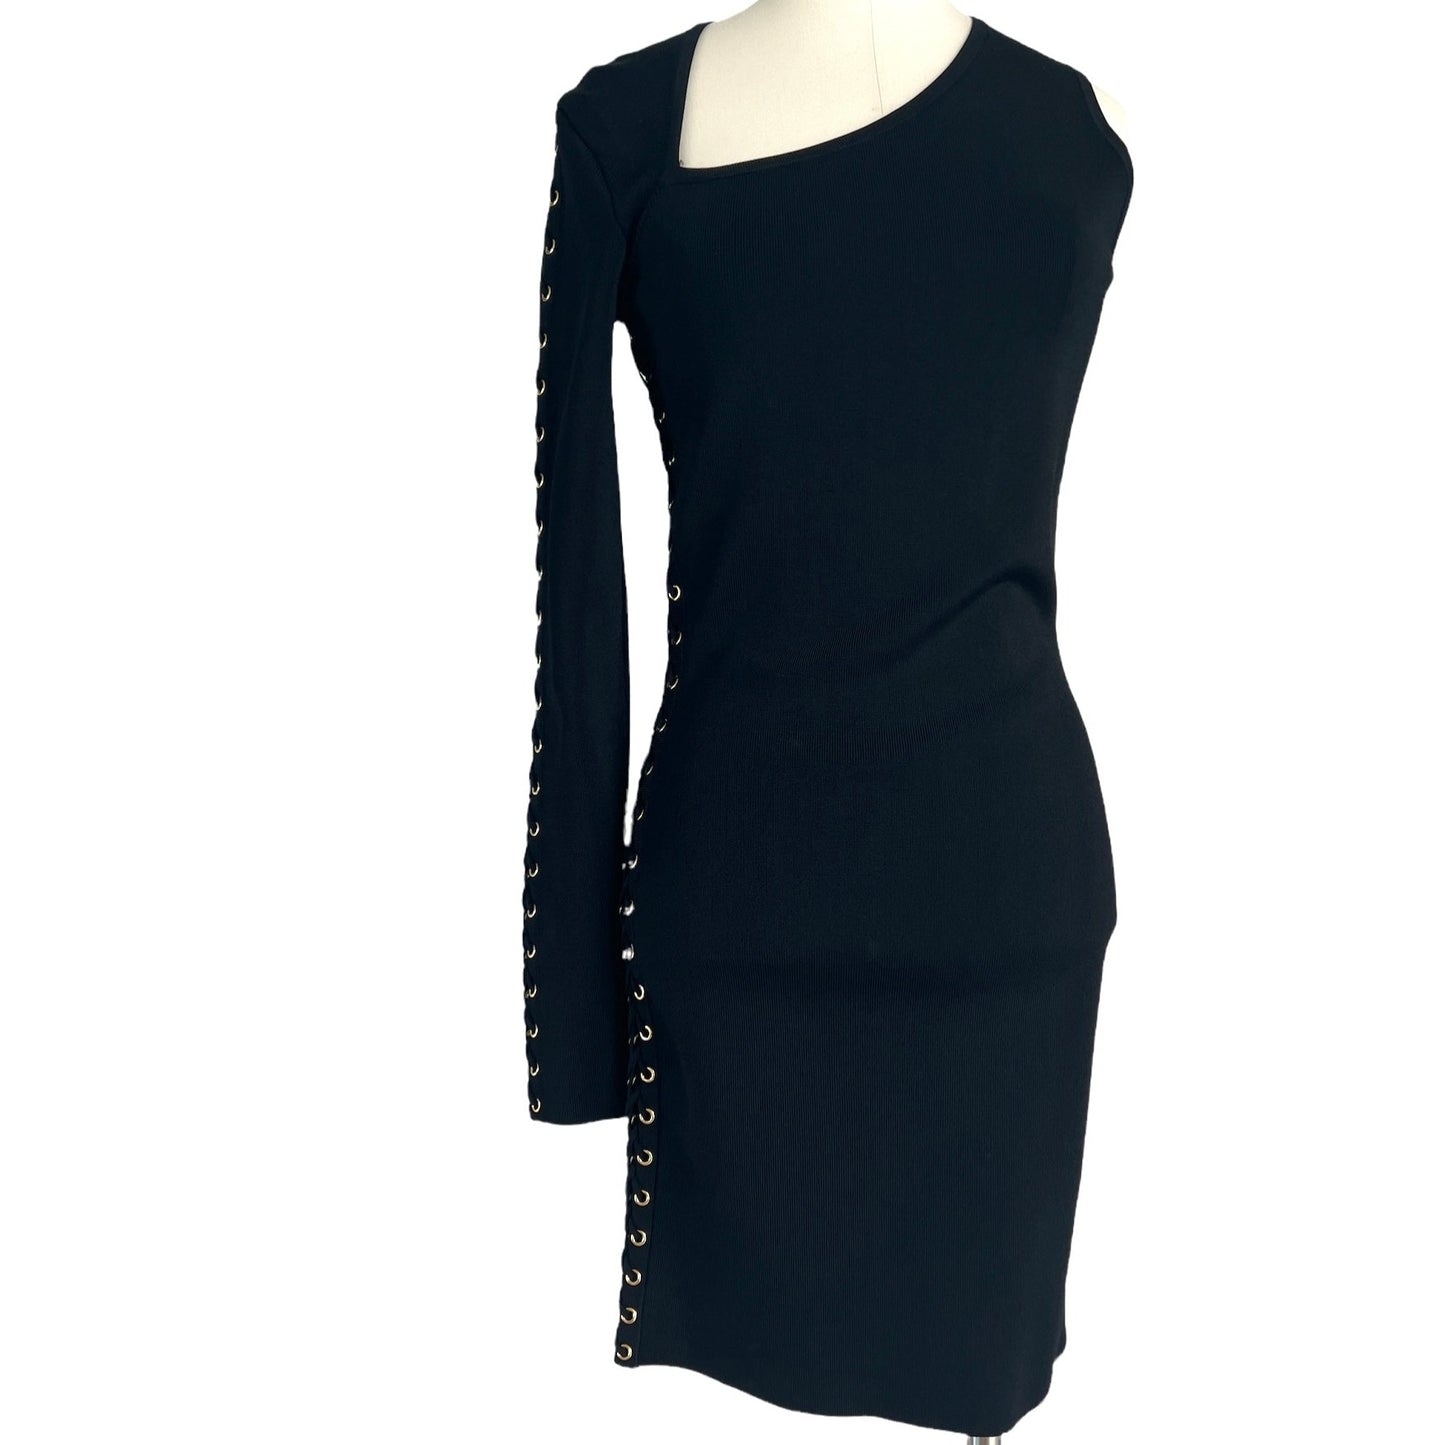 One Shoulder Black Dress - 6